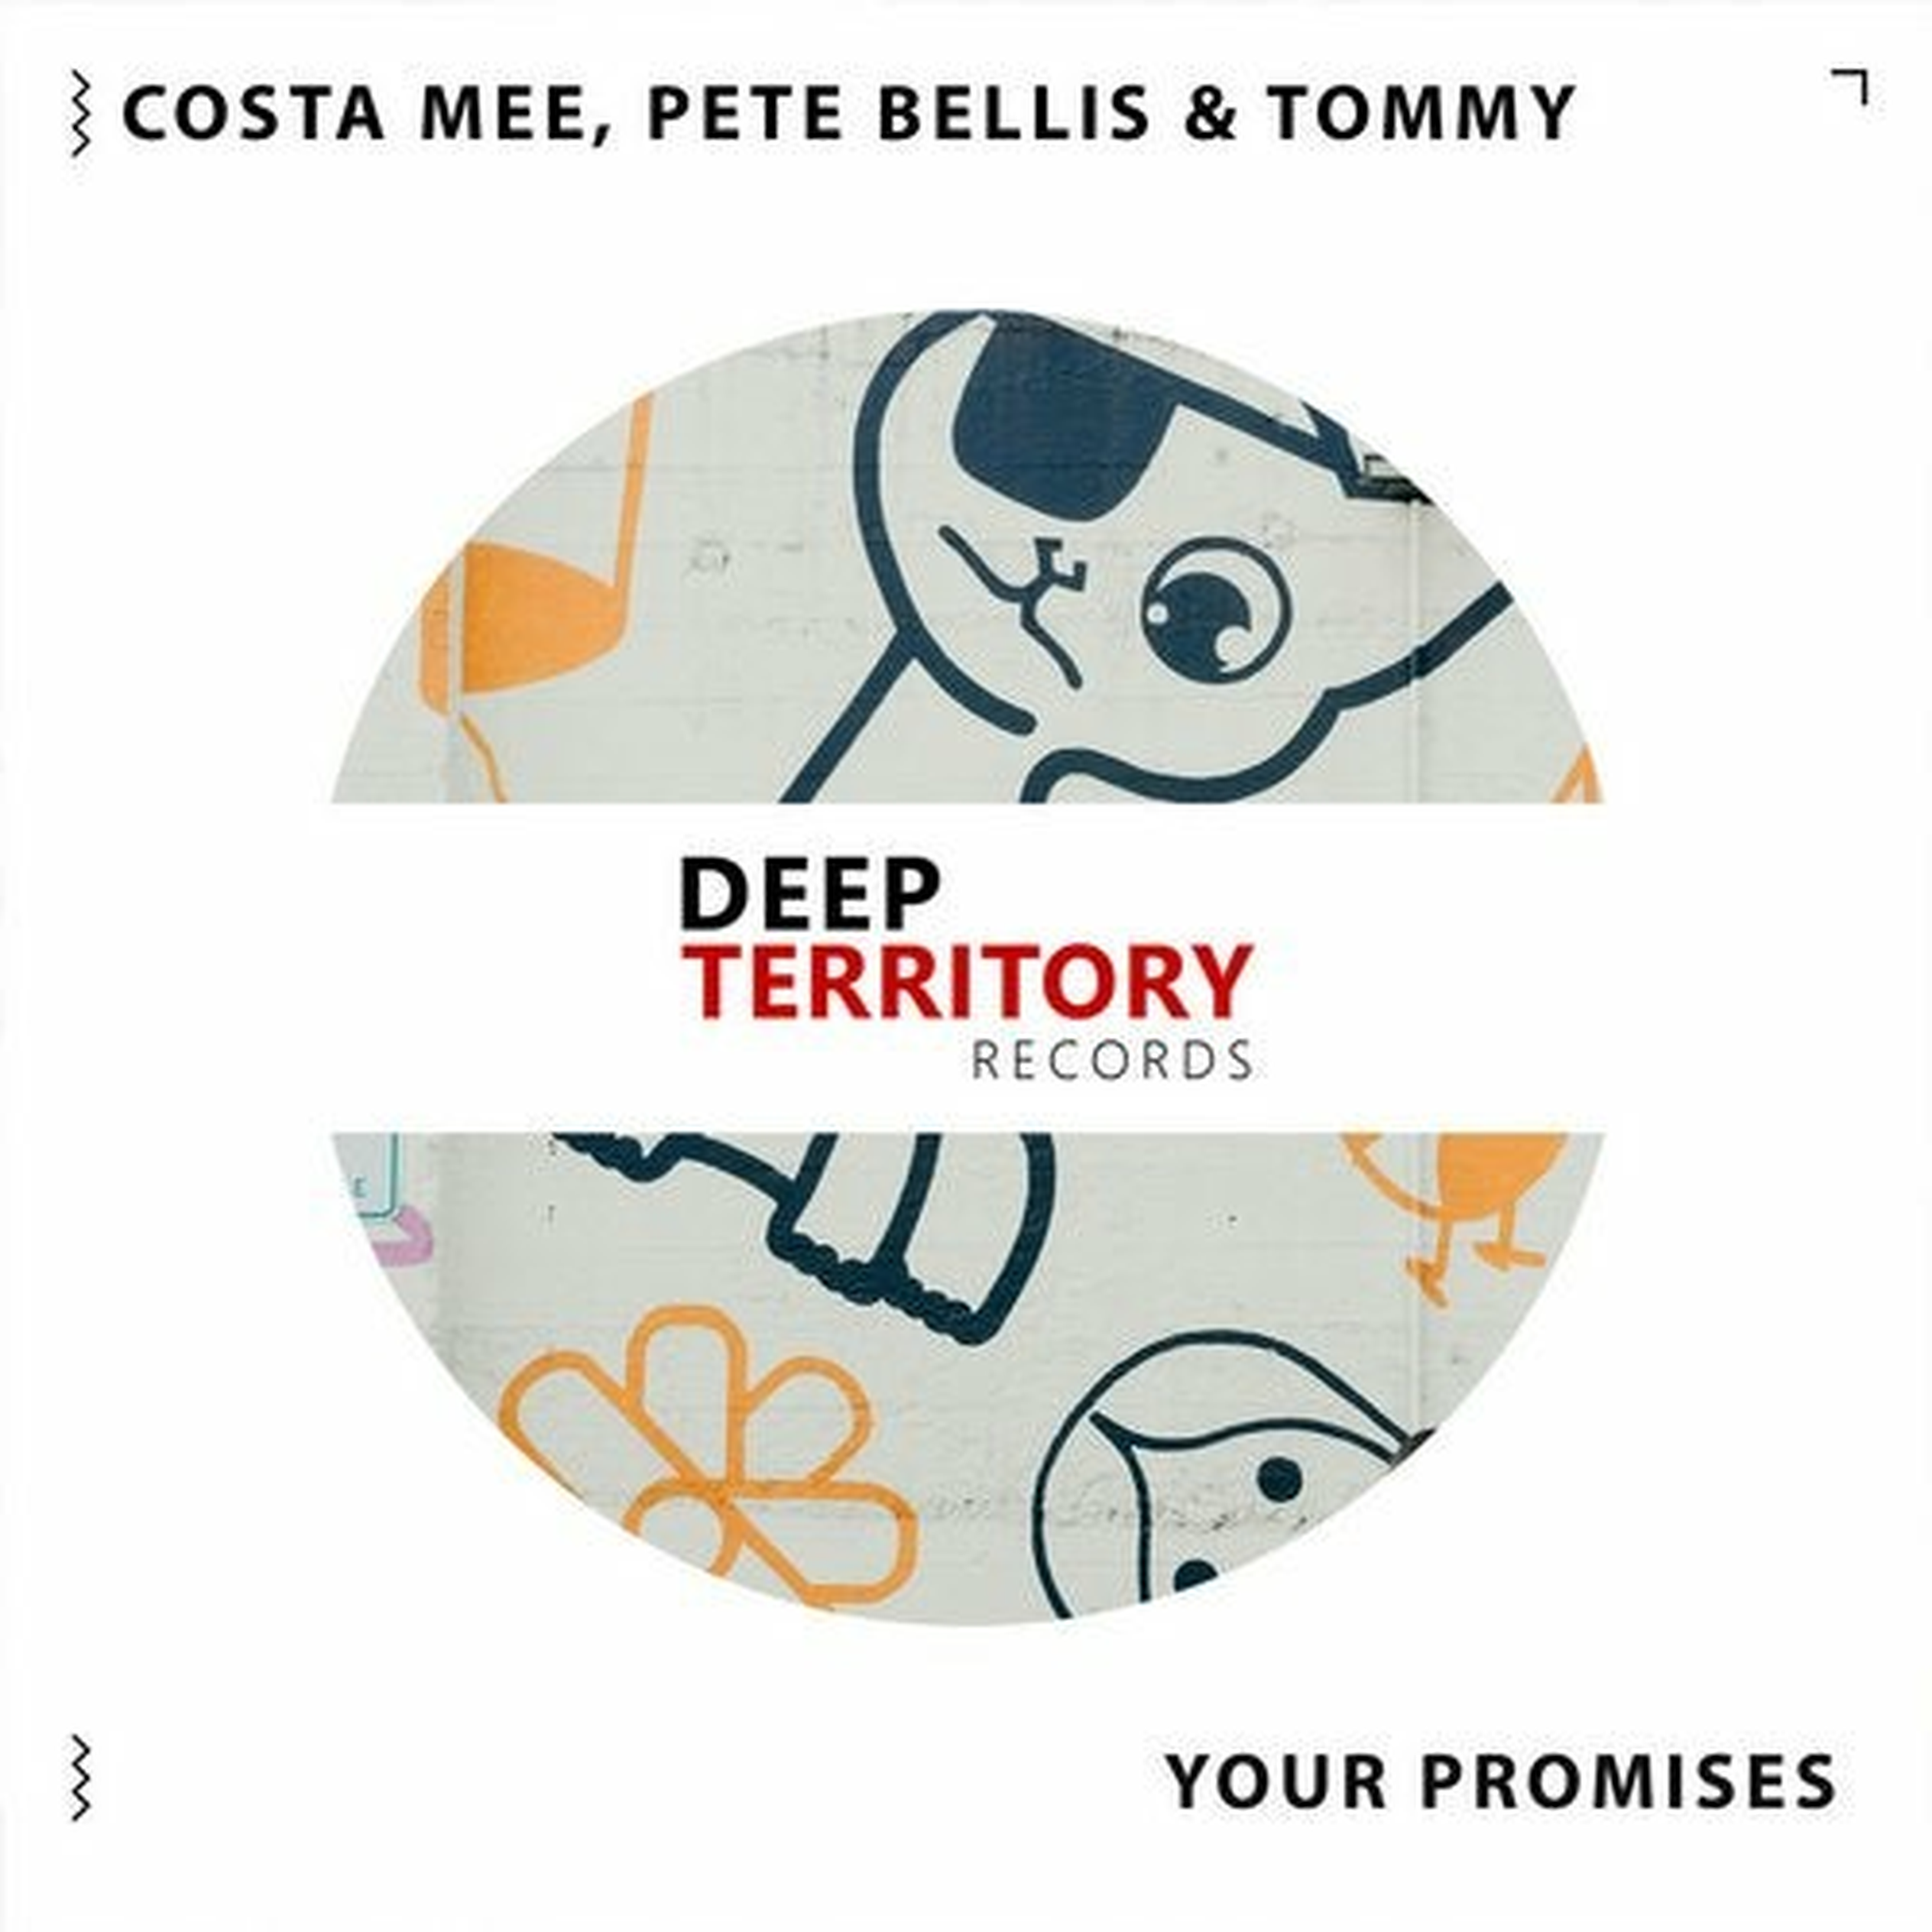 Costa mee pete bellis tommy remix. Costa mee & Pete Bellis & Tommy. Costa mee & Pete Bellis & Tommy - empty Promises. Costa mee Pete Bellis Tommy looking for you. Pete Bellis Deep Territory.